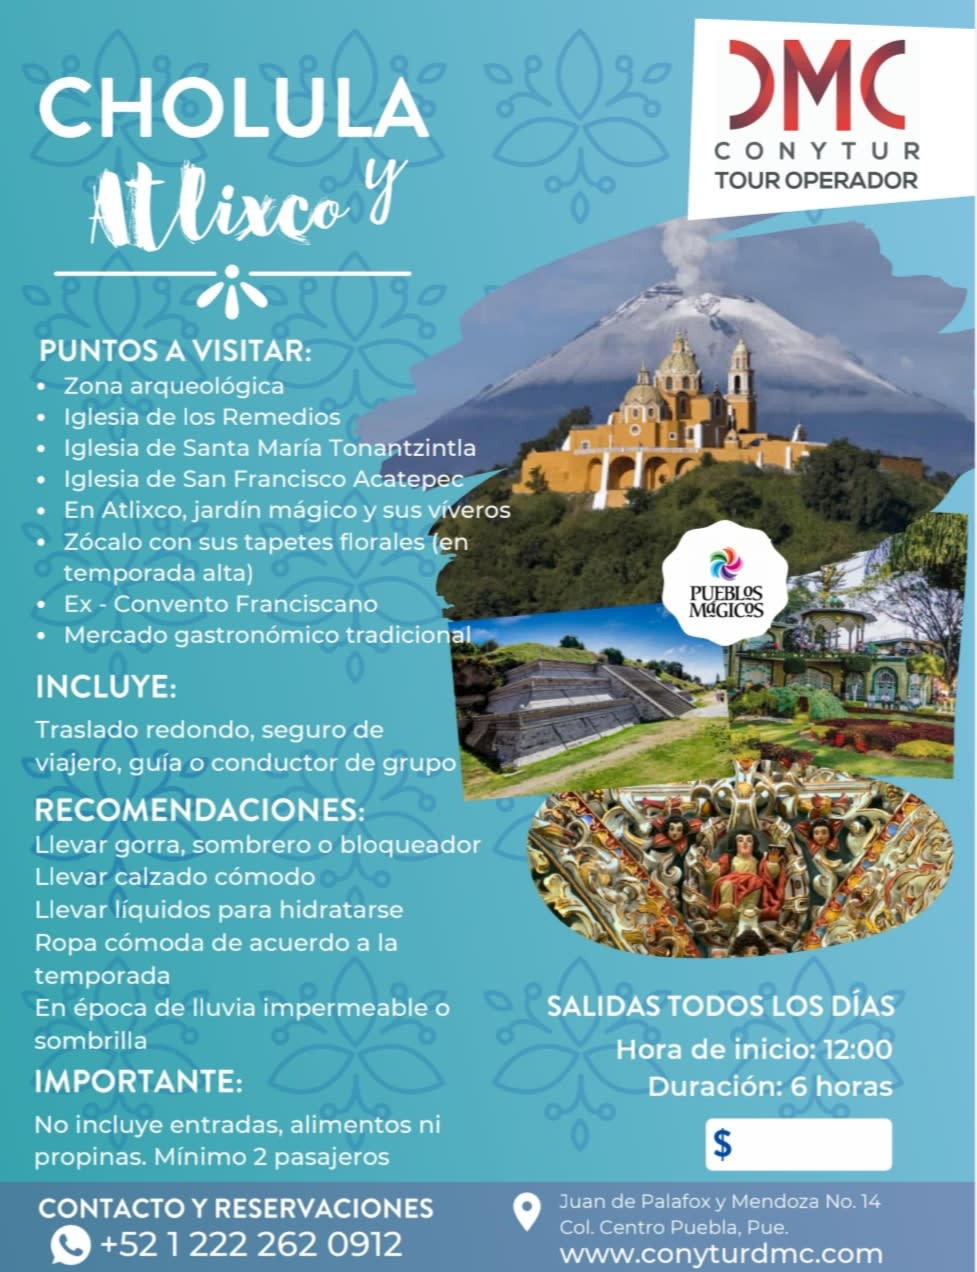 Cholula y Atlixco - Pueblos Mágicos de Puebla - Conytur Tour Operadora y  Dmc | Agencia de viajes